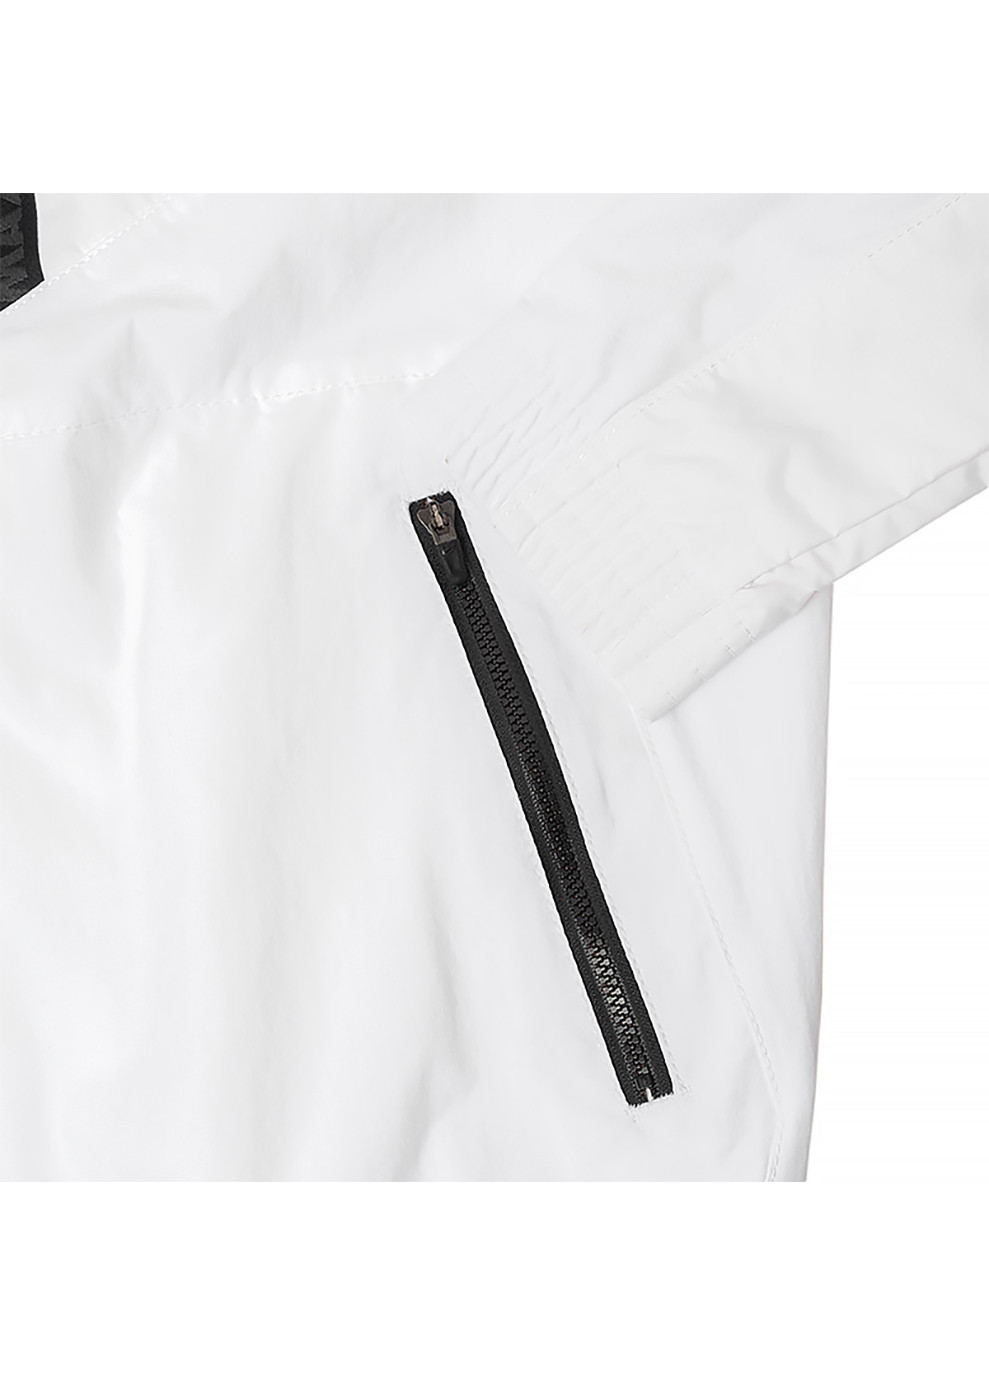 Белая демисезонная мужская куртка m nsw air max wvn jacket белый s (dv2337-100 s) Nike